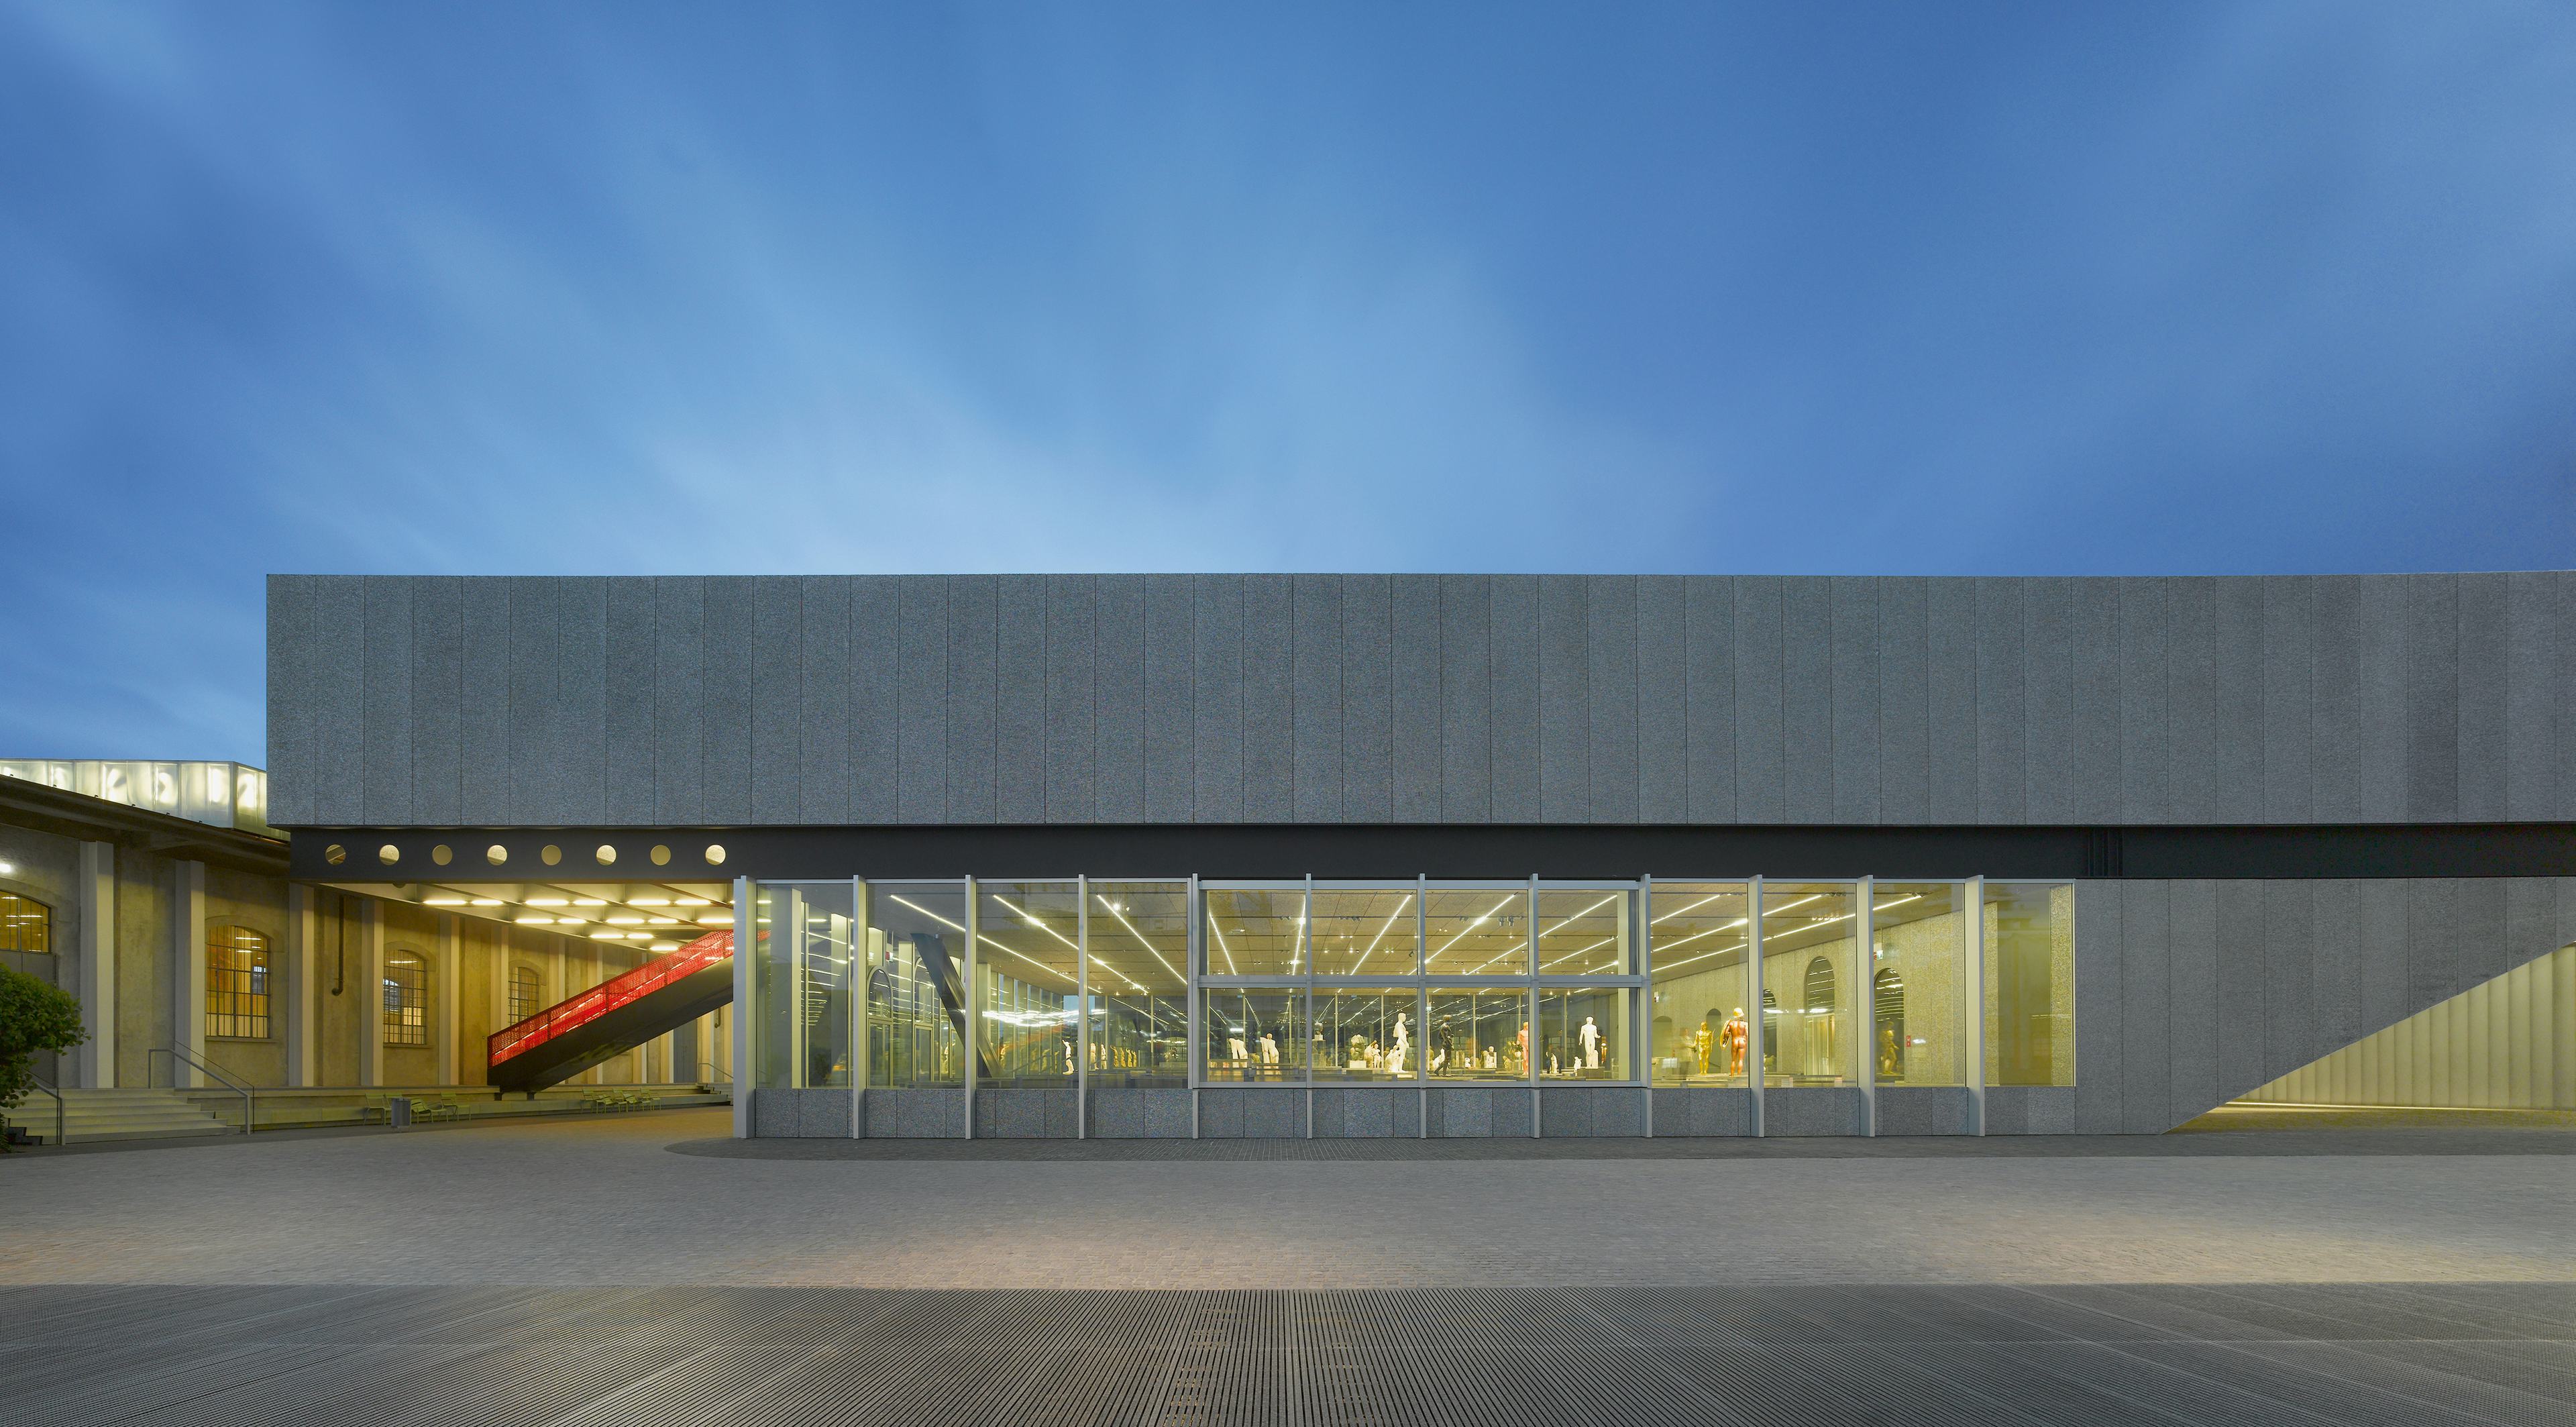 Het museum, een van de drie nieuwe gebouwen, biedt plaats aan tijdelijke exposities. Het is gemaakt van glas, beton en geëxplodeerd aluminium dat de schuimachtige oppervlakten vormt. - Beeld Roland Halbe